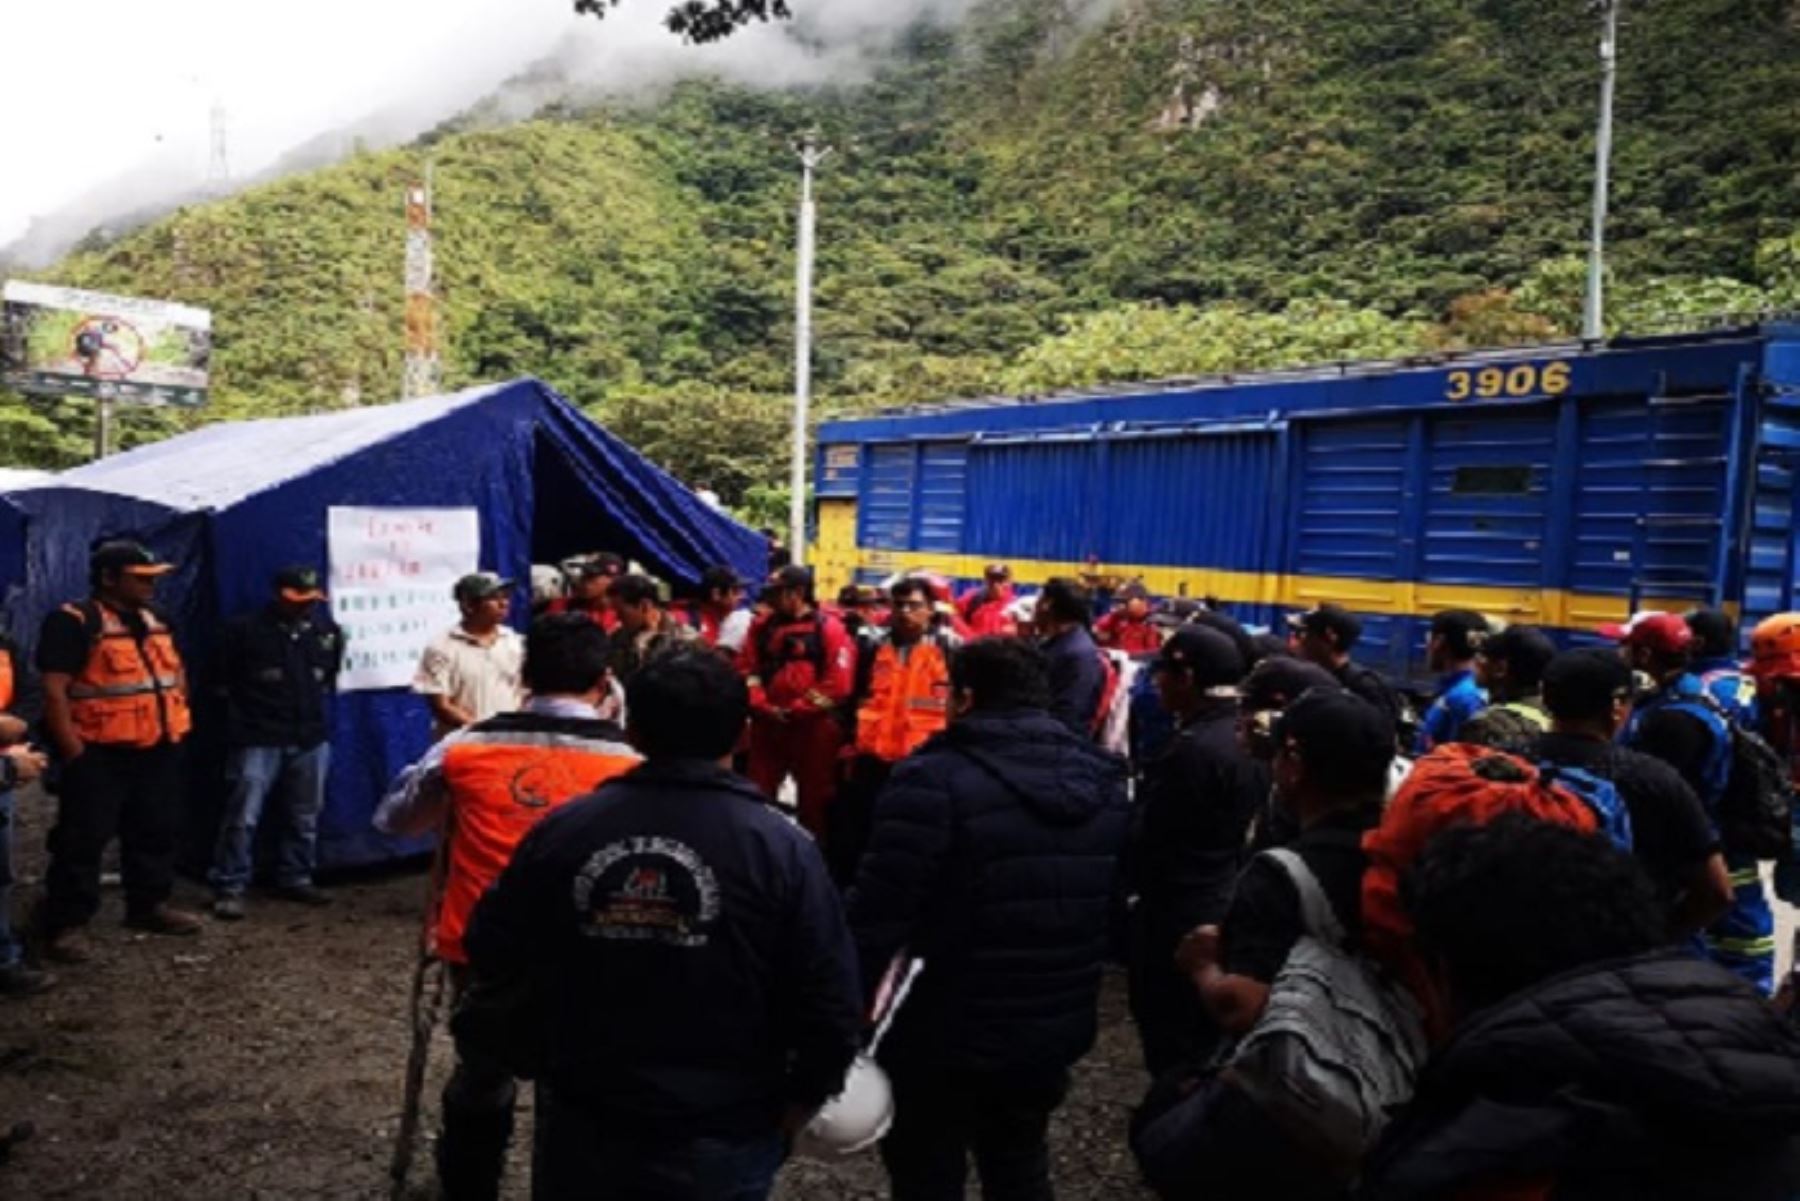 El alcalde de Machu Picchu, Darwin Baca León, se hizo presente en el sector de Hidroeléctrica e Intiwatana, límite con Santa Teresa, para encabezar la reunión de coordinación con la Oficina de Gestión de Riesgos, a fin de verificar el estado en el que se encuentra la zona afectada.